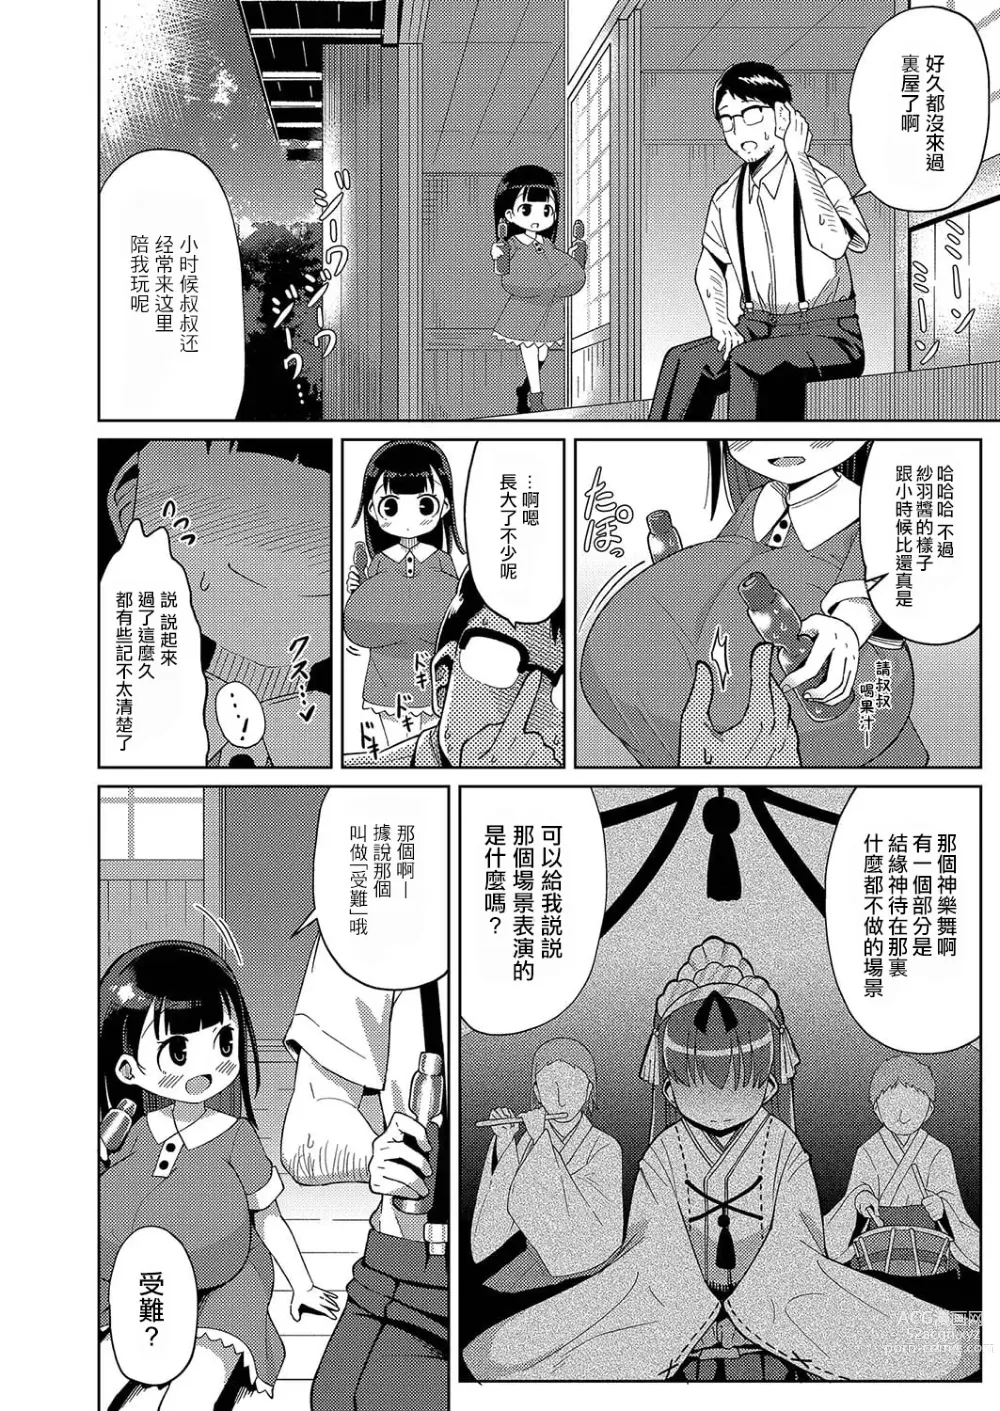 Page 5 of manga Kagura